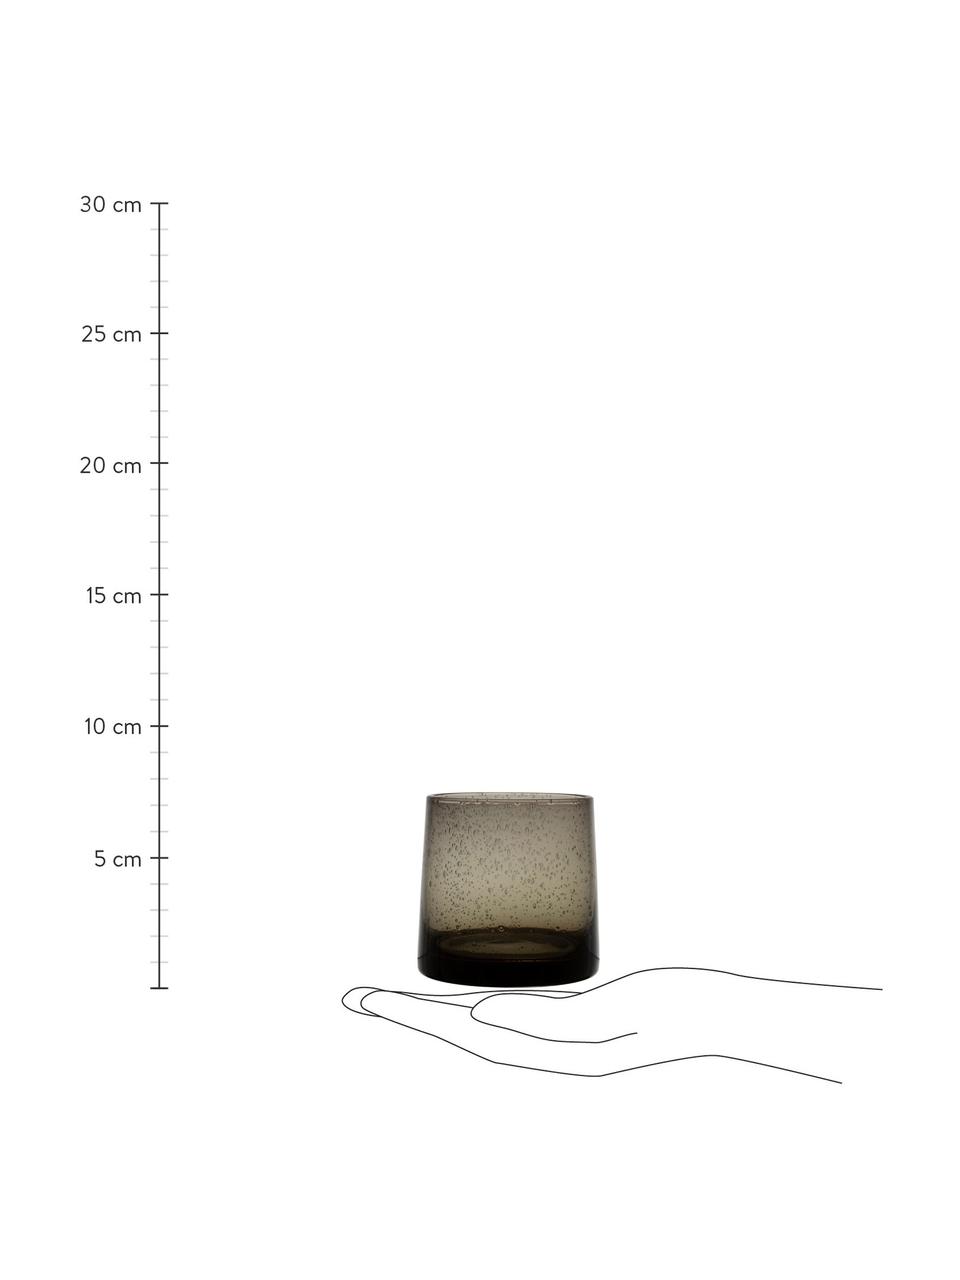 Waterglazen Lorea in grijs met luchtholten, 6 stuks, Glas, Grijs, Ø 7 x H 8 cm